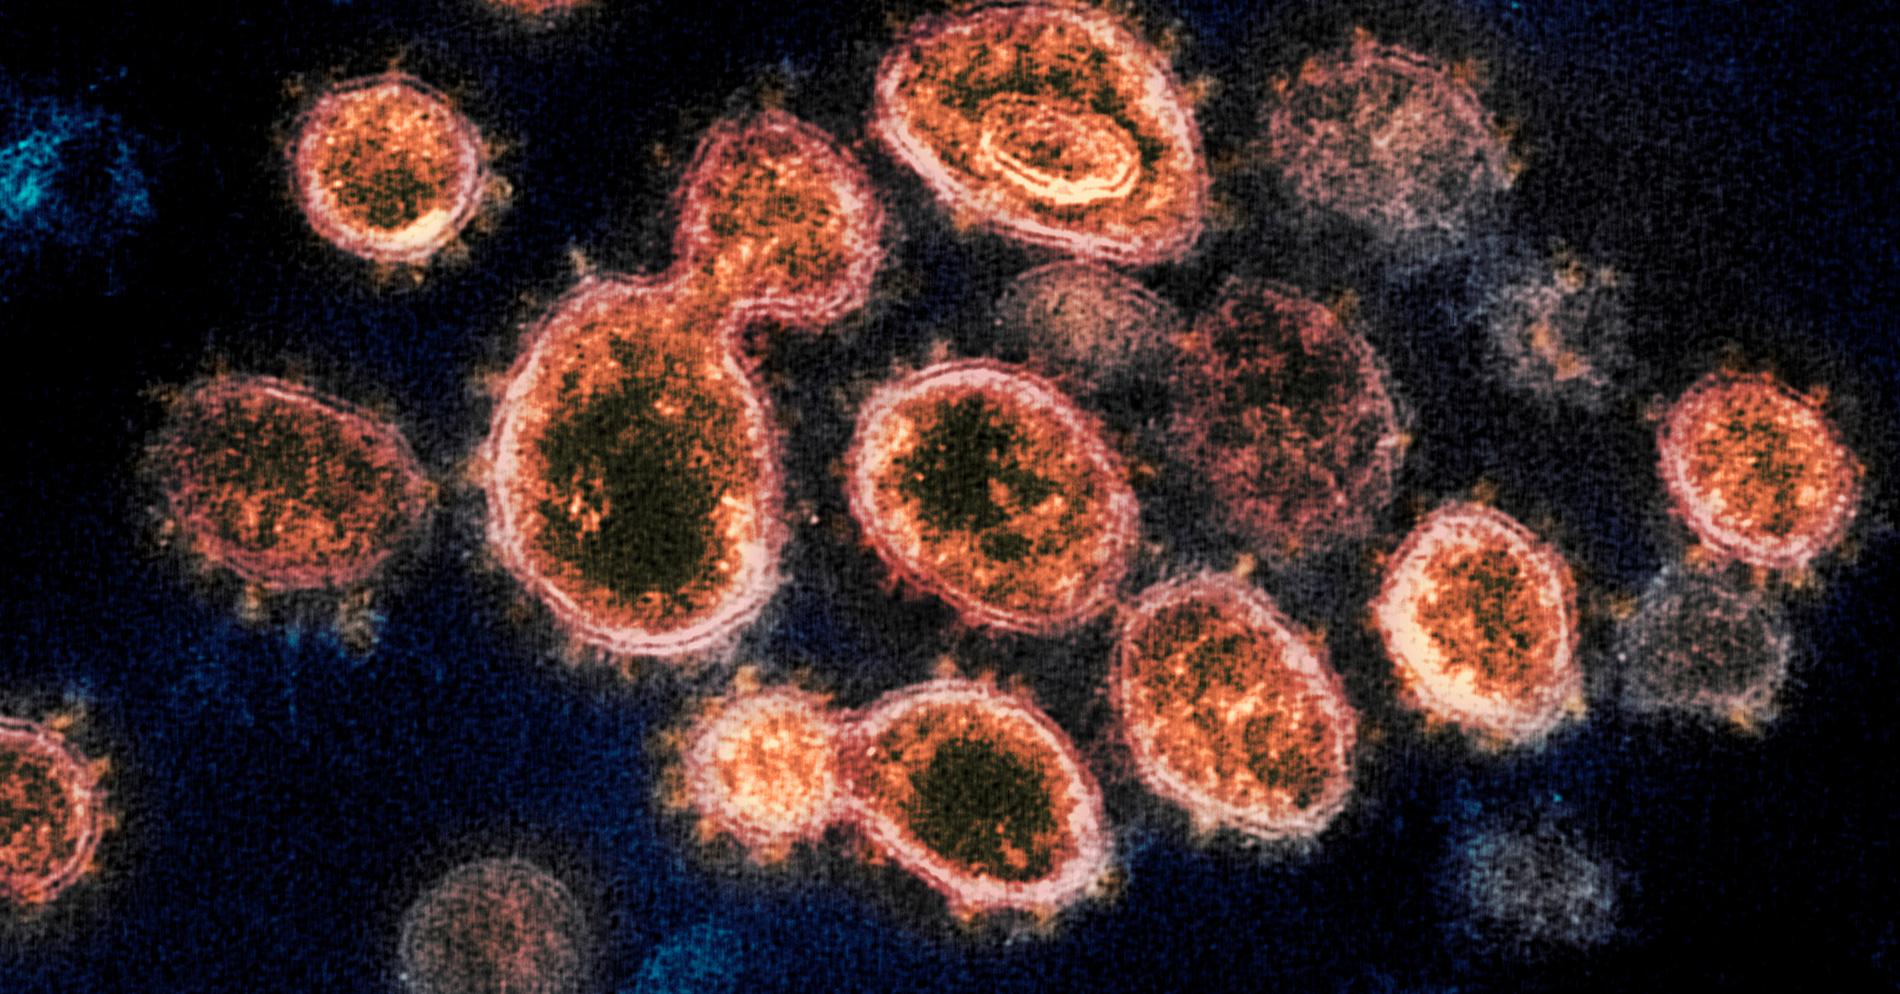 Viruset SARS-CoV-2 orsakar covid-19.